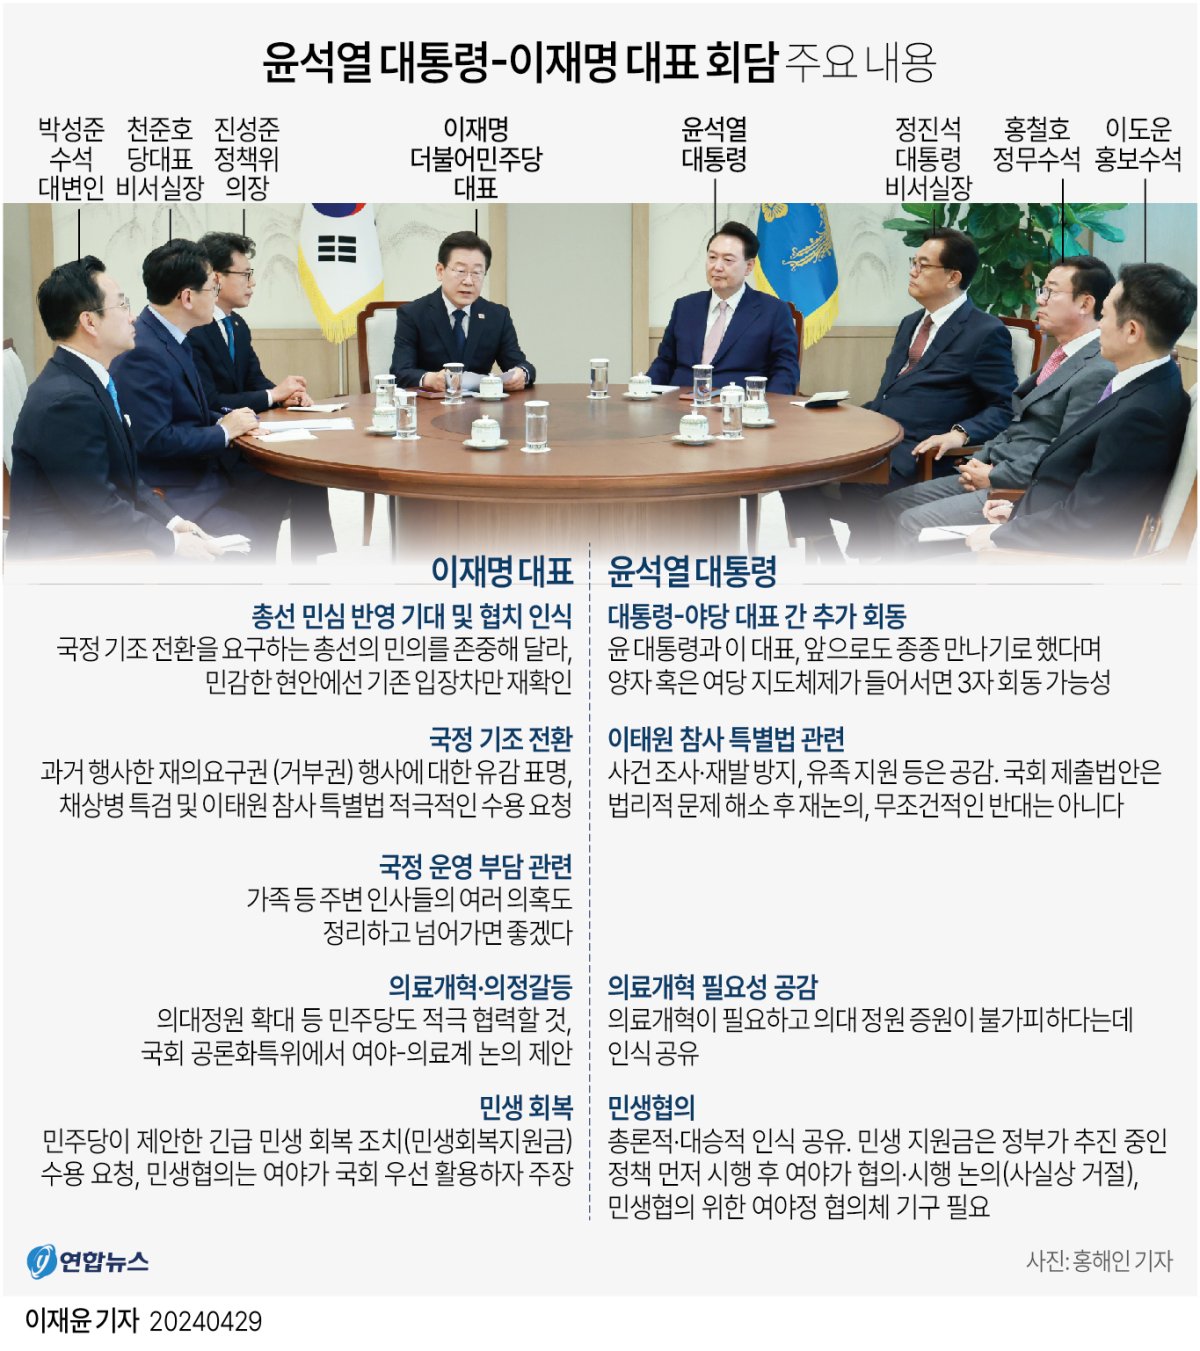  윤석열 대통령-이재명 대표 회담 주요 내용(종합)